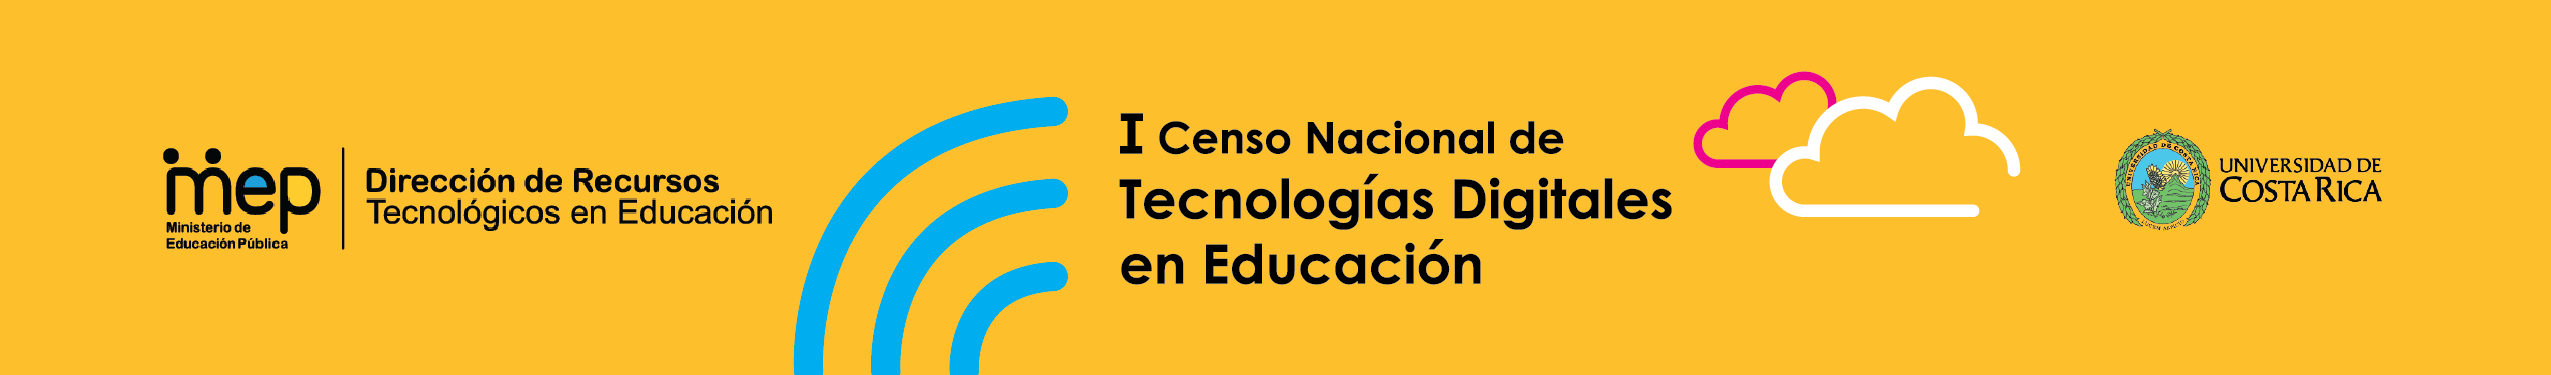 I Censo Nacional de Tecnologías Digitales en Educación